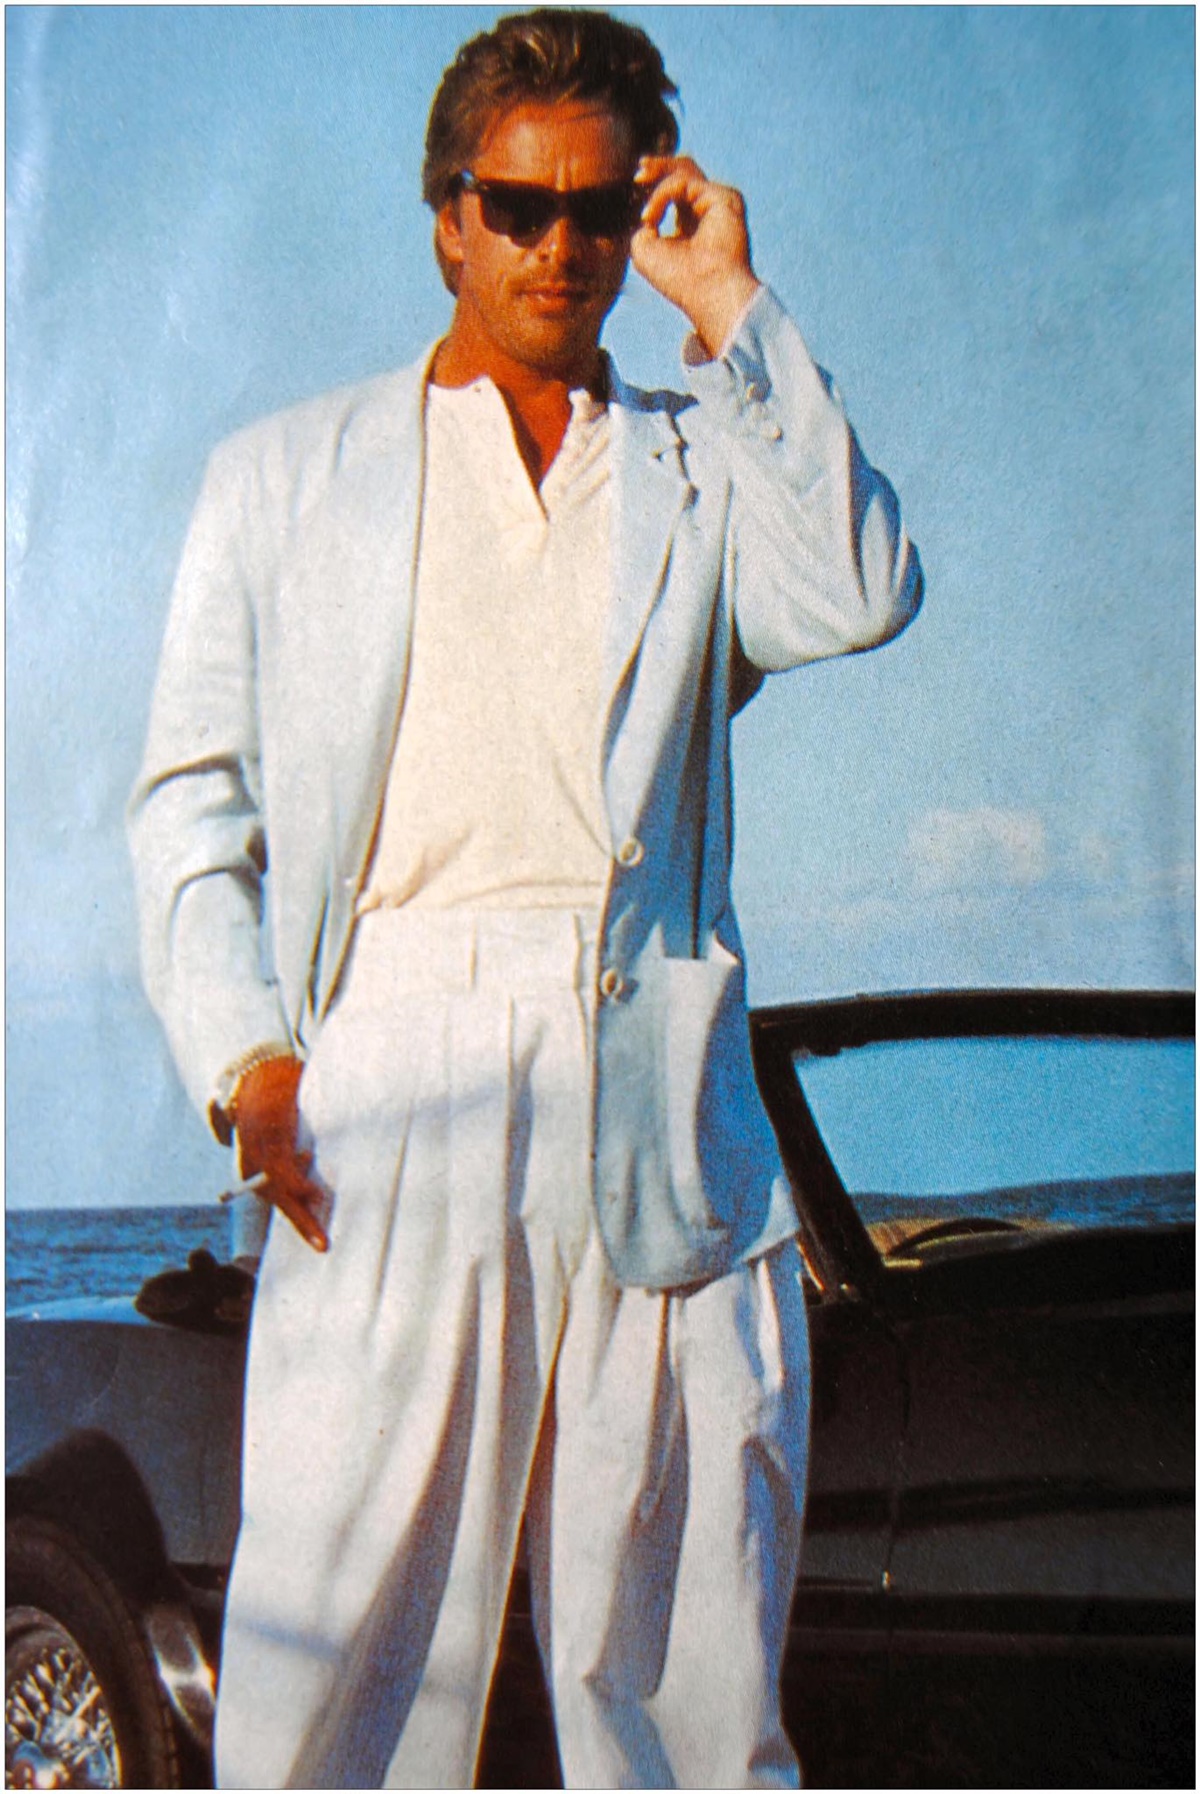 Emlékszel még a Miami Vice szőke szívtiprójára? A 73 éves Don Johnson még mindig nagyon sármos